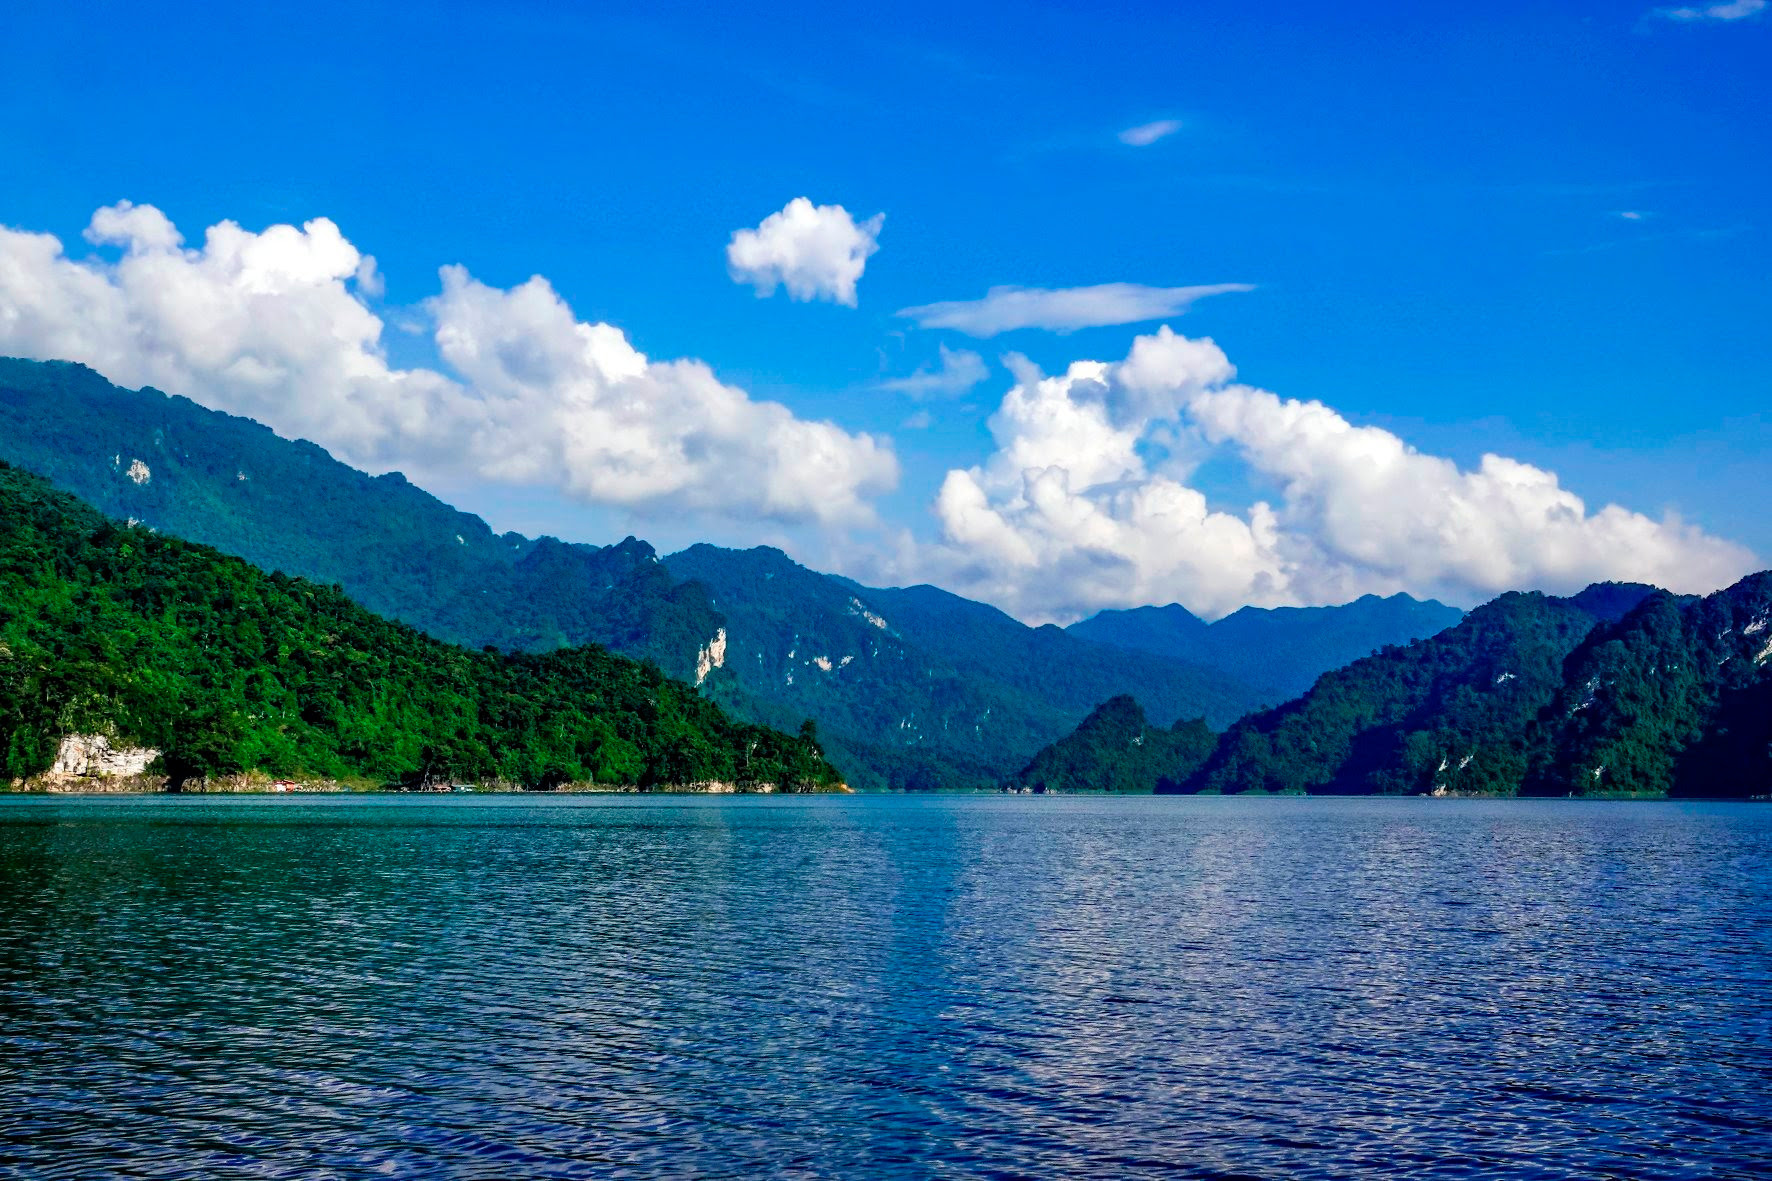 Hồ nước ngọt nhân tạo lớn nhất Tuyên Quang hiện ra đẹp như phim, có ngọn thác đổ, rừng nguyên sinh - Ảnh 9.